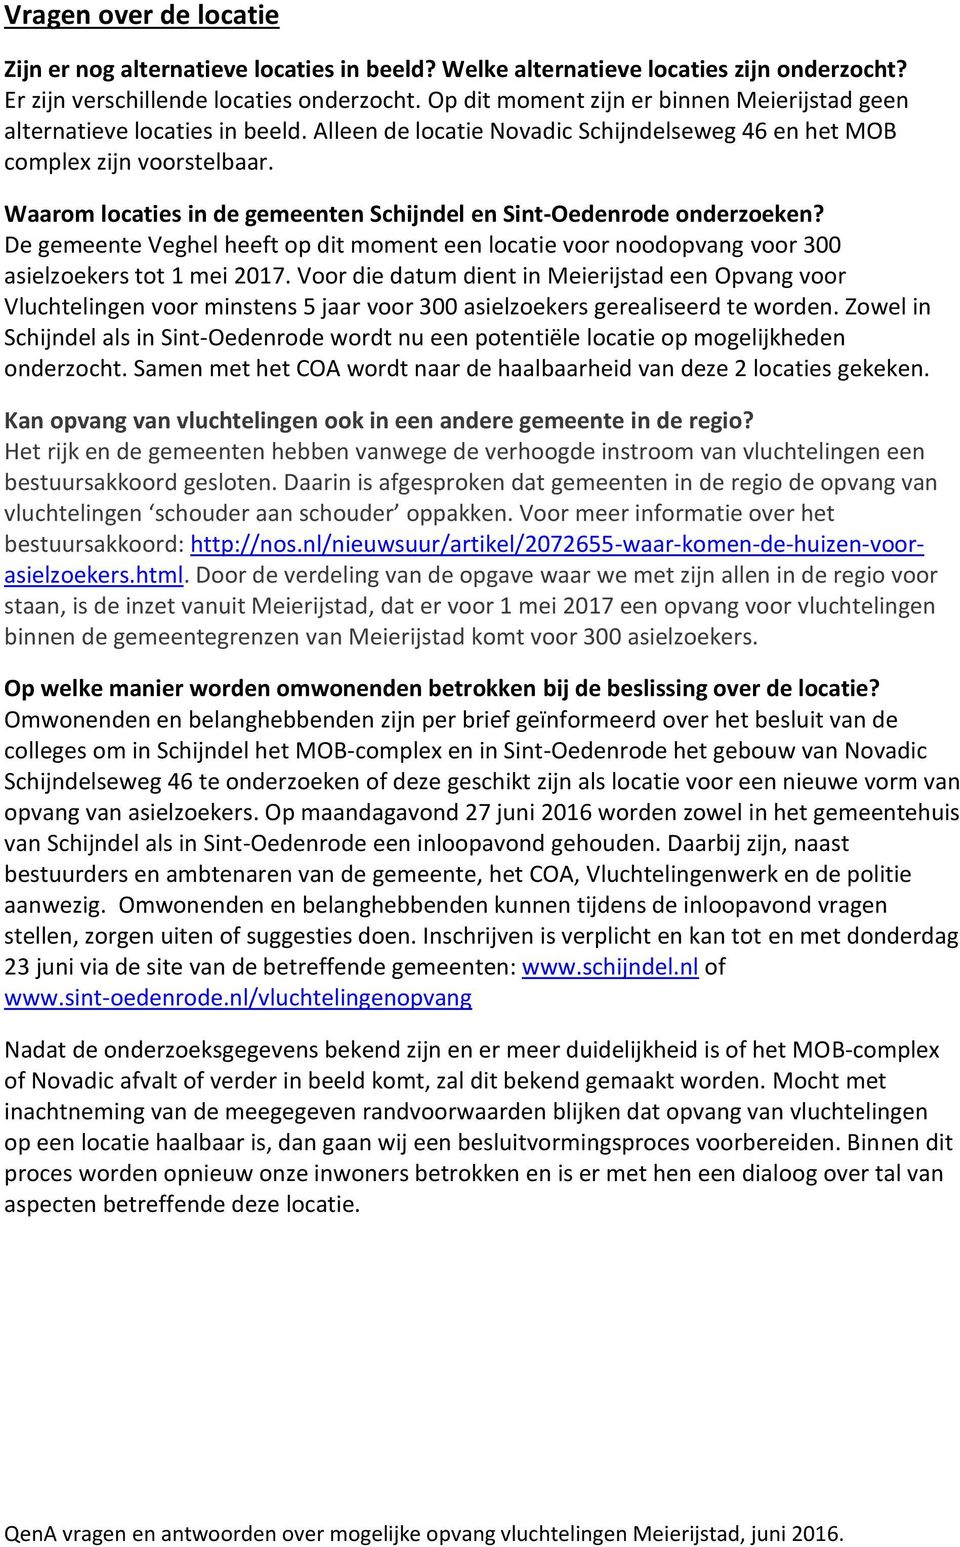 Waarom locaties in de gemeenten Schijndel en Sint-Oedenrode onderzoeken? De gemeente Veghel heeft op dit moment een locatie voor noodopvang voor 300 asielzoekers tot 1 mei 2017.